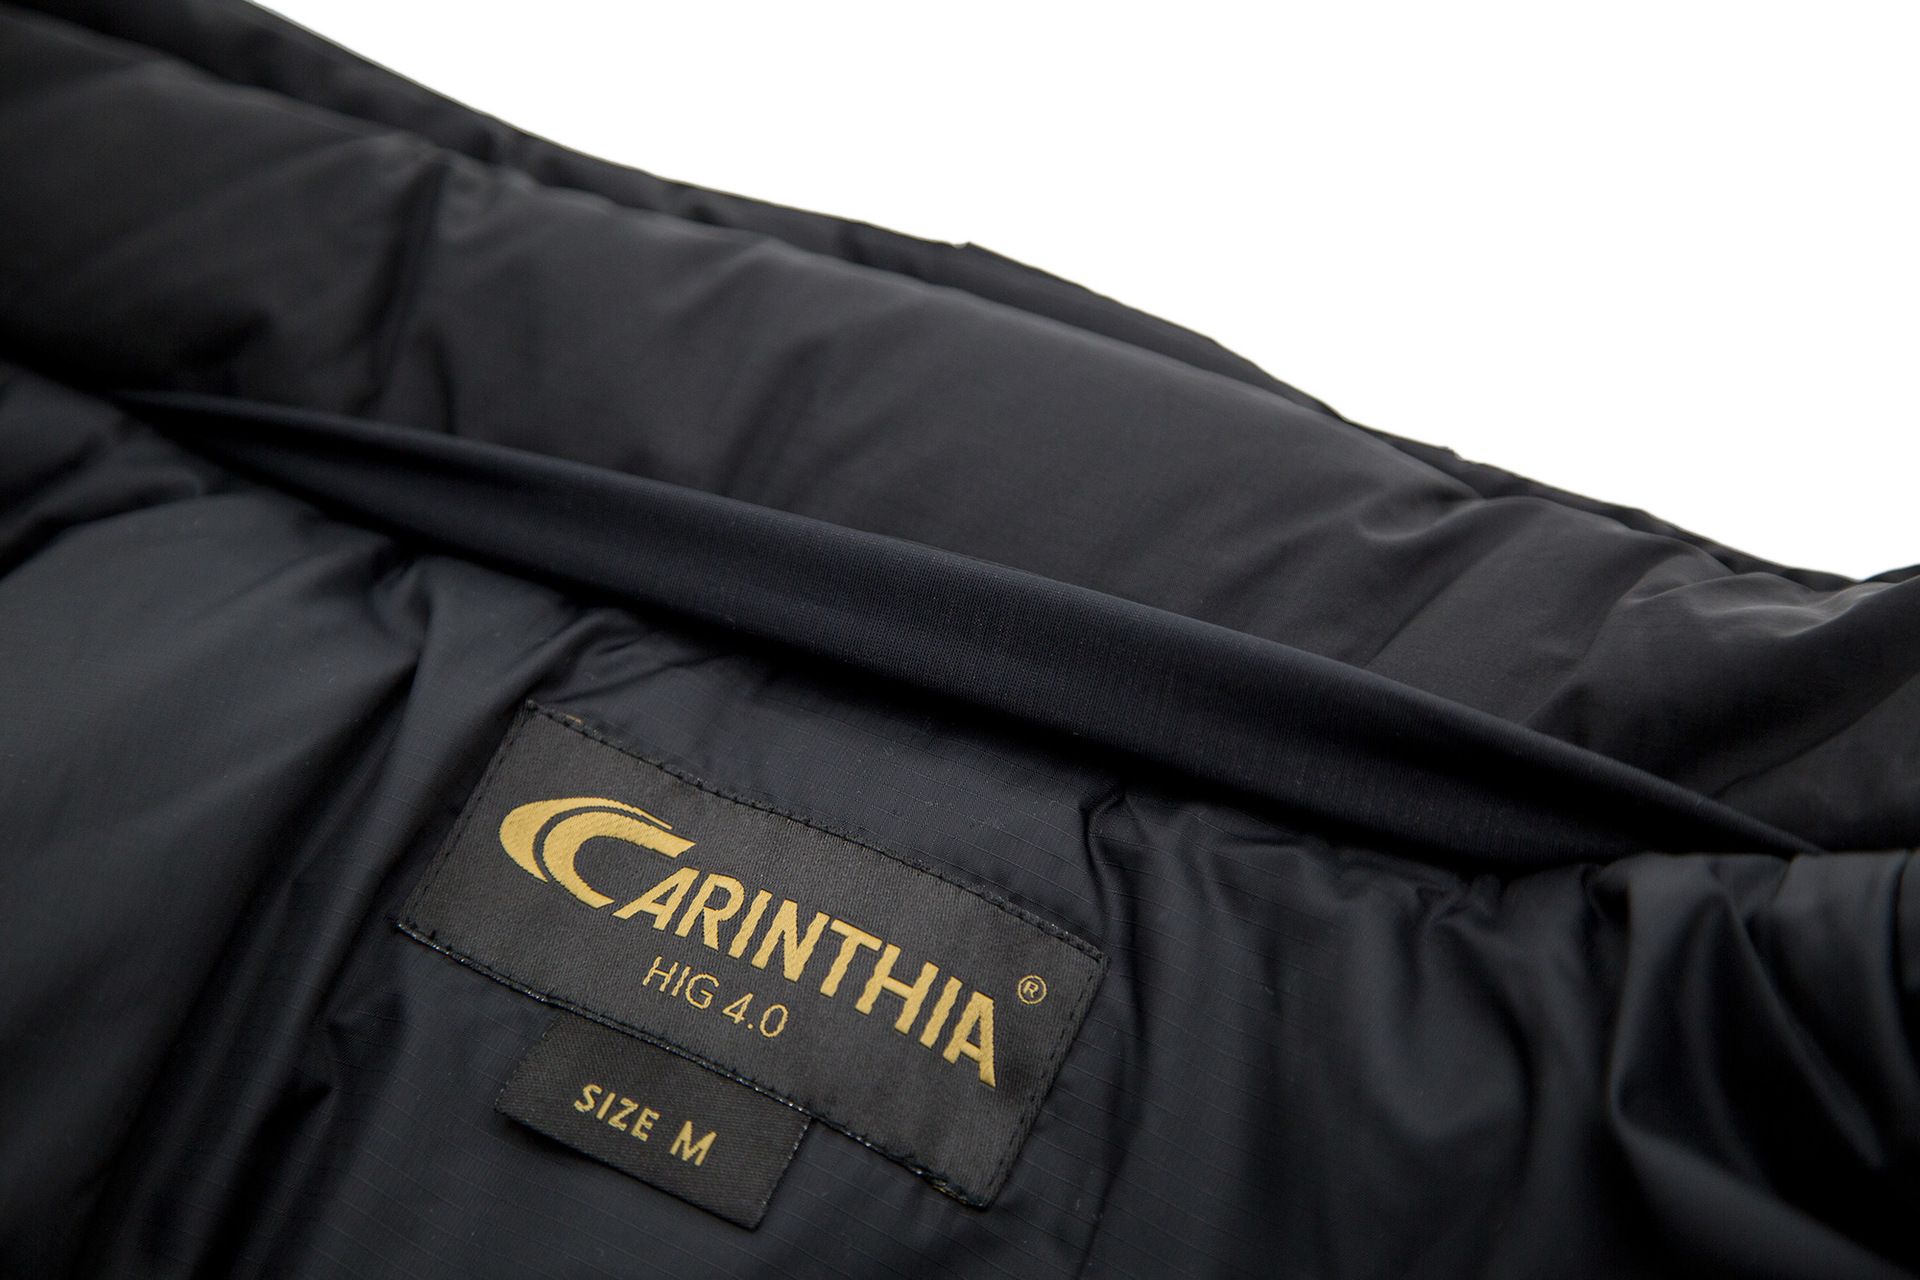 HIG 4.0 Jacket | Carinthia Webshop